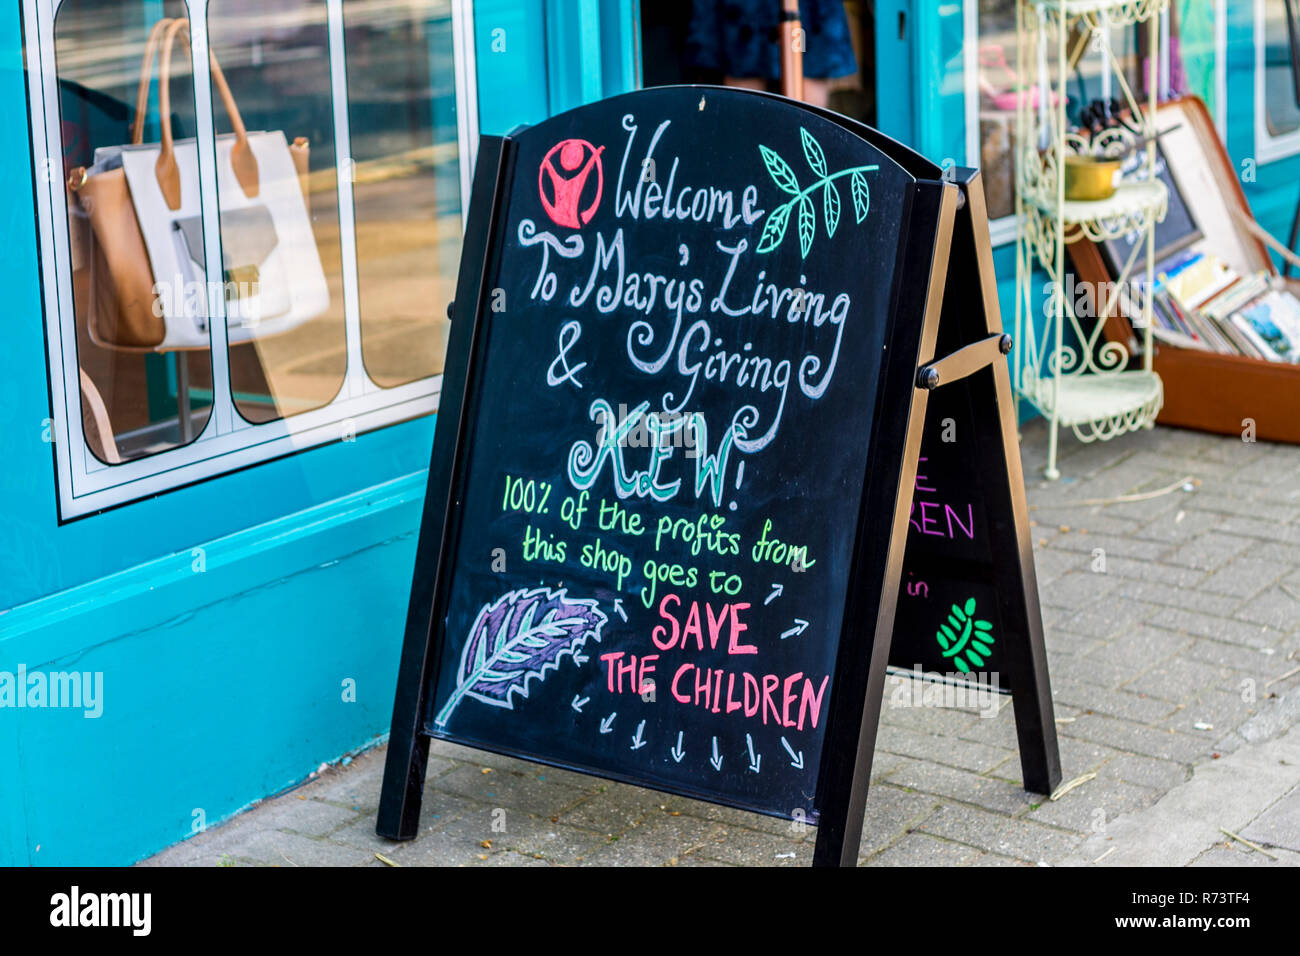 Mary's Living und Giving Shop Kew, Charity Shop Blackboard anmelden, Kreide Zeichen schwarz weiß, Small Business Concept Shop front store Schnickschnack Stockfoto